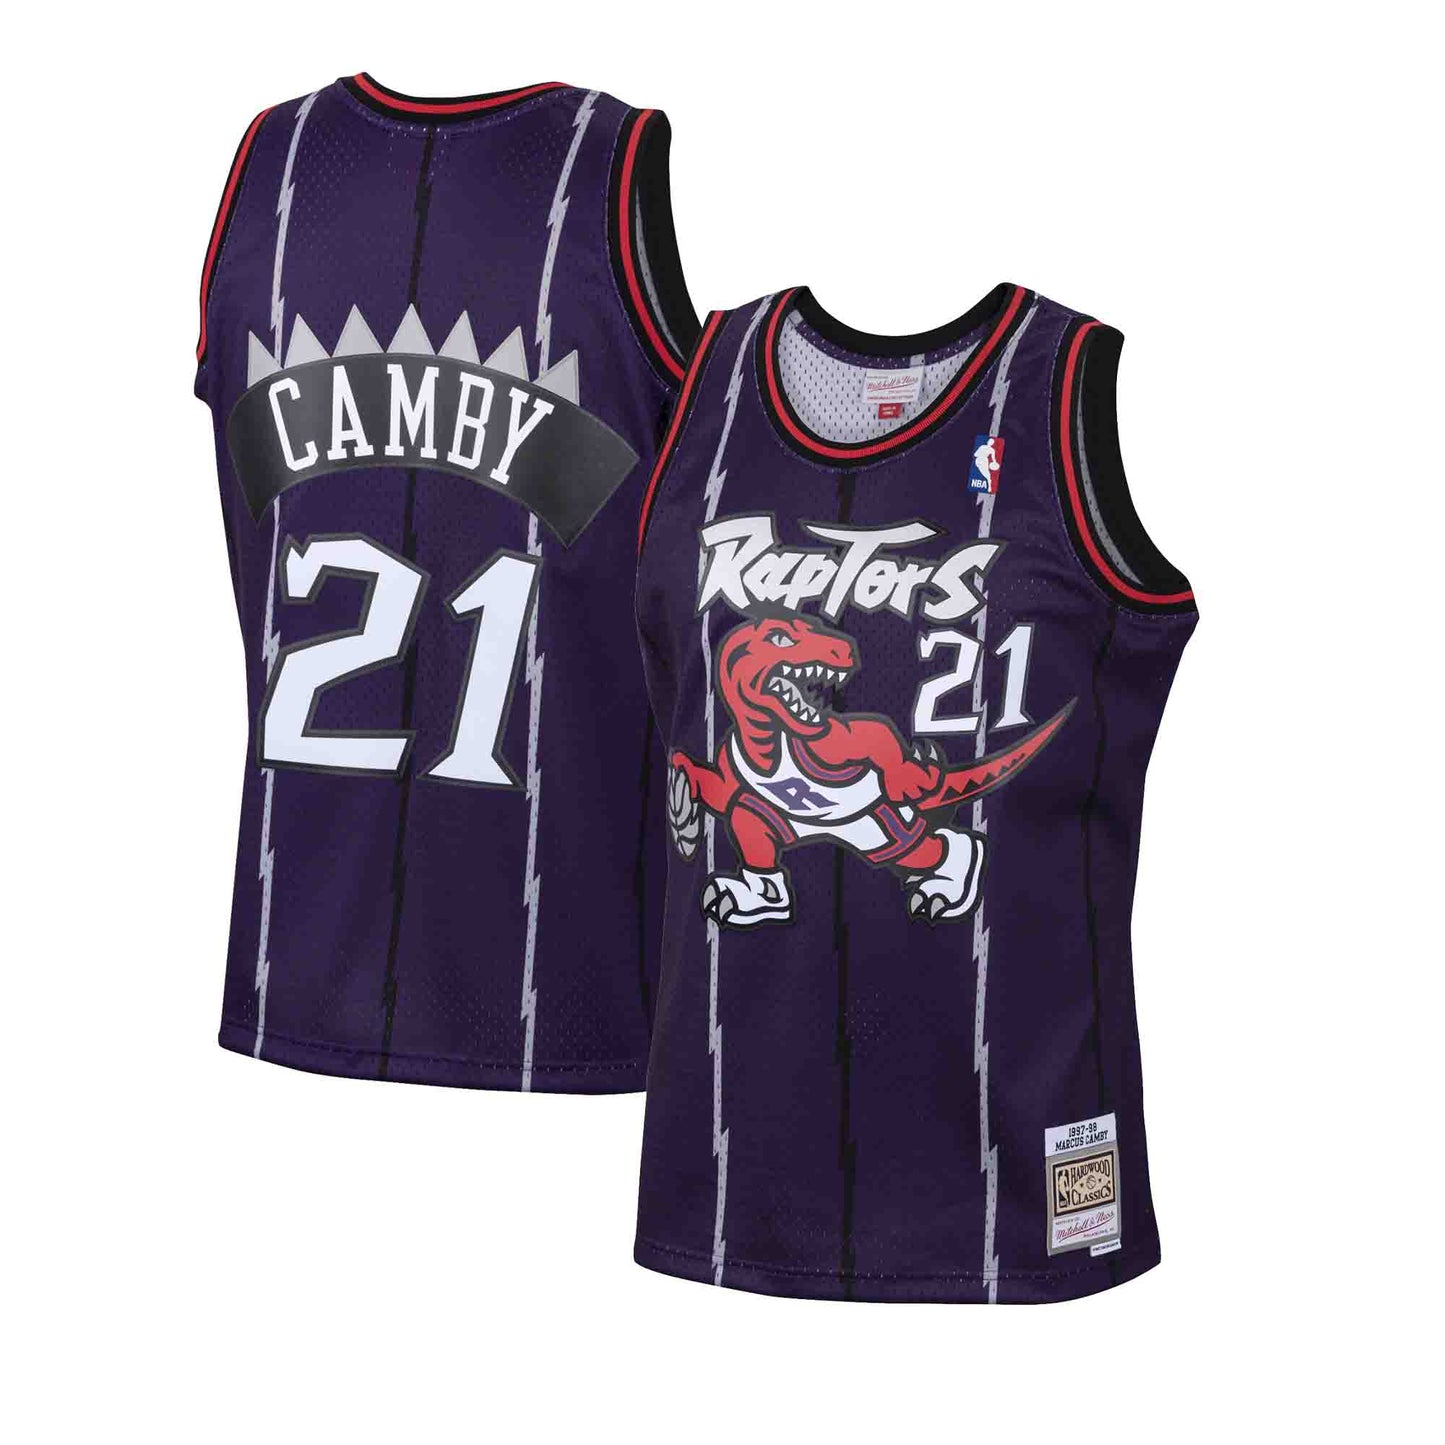 Toronto Raptors Swingman Charles Oakley Jersey Size XL for Sale